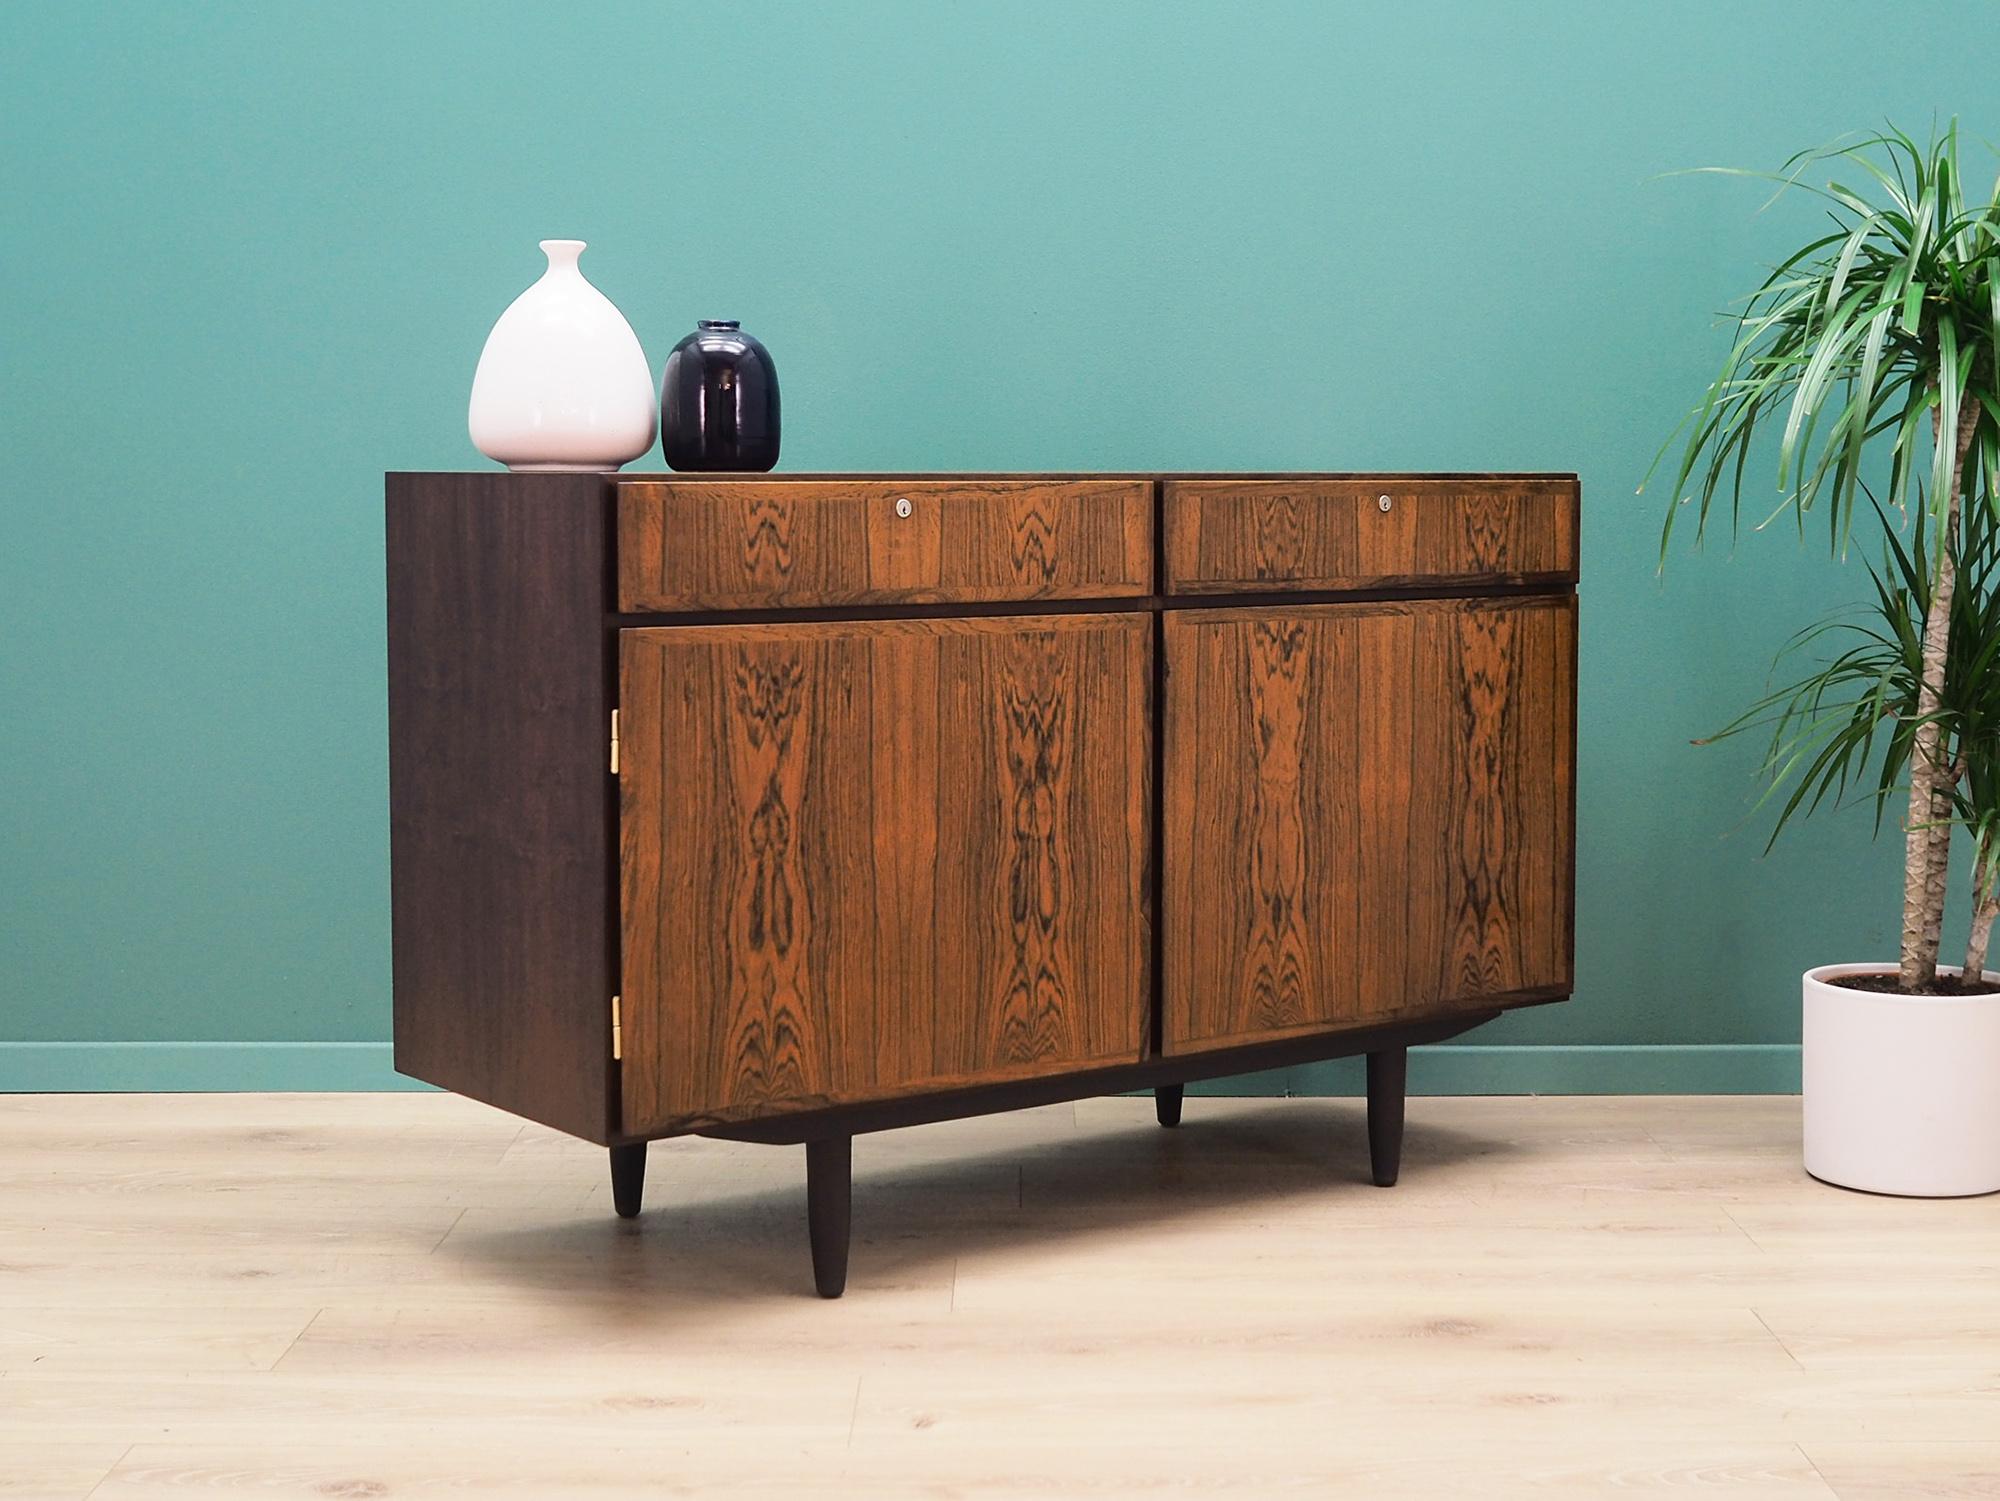 Scandinavian Modern Rosewood Cabinet, Danish Design, 1960s, Producer Omann Jun